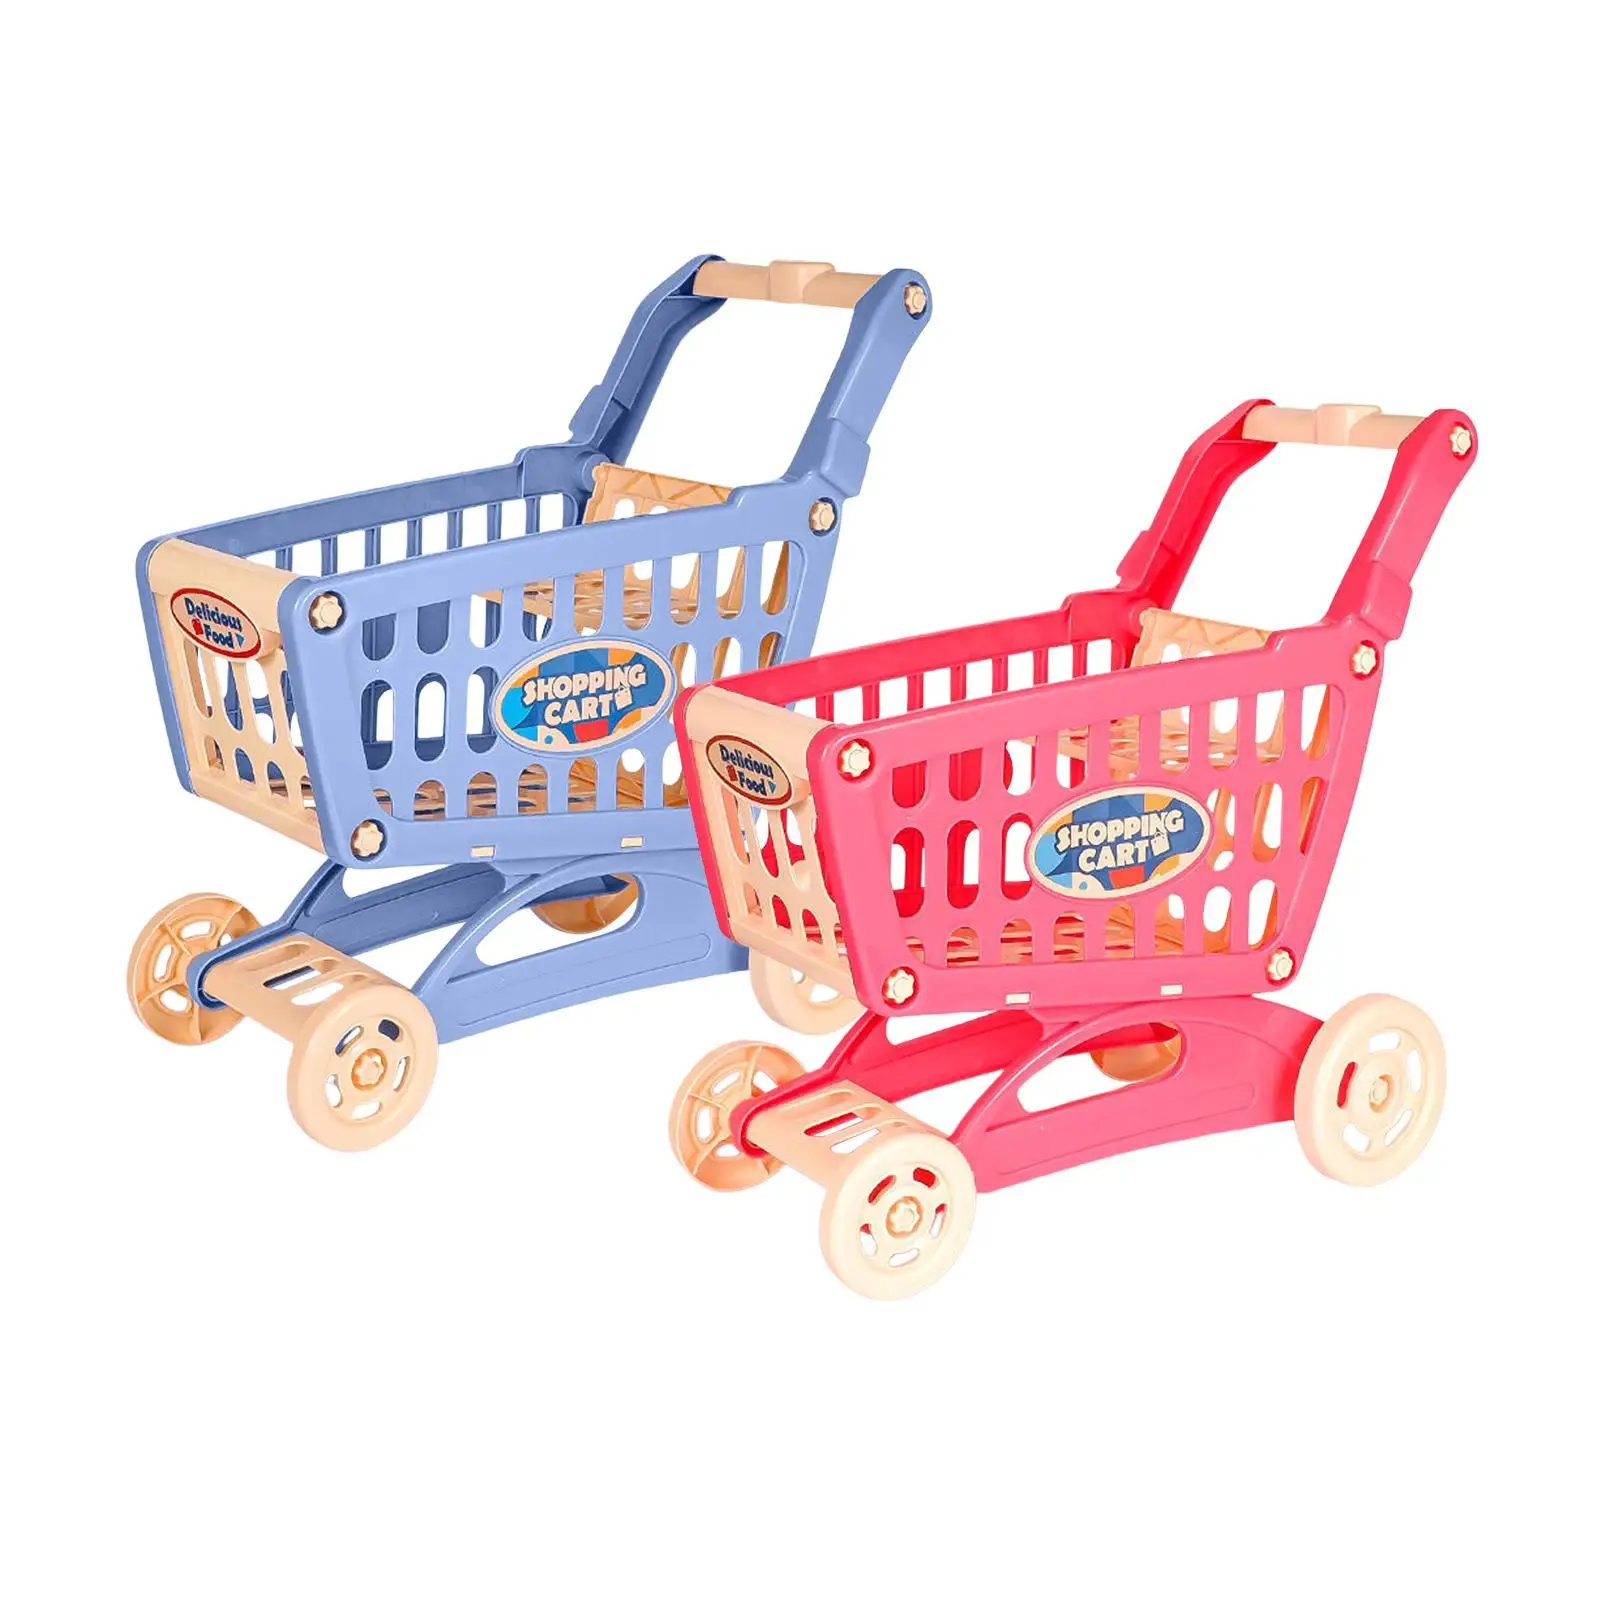 

Имитация игрушечной тележки для покупок, игрушечная тележка с гладкими колесами для хранения, для детей от 3 лет и старше, ролевая игра